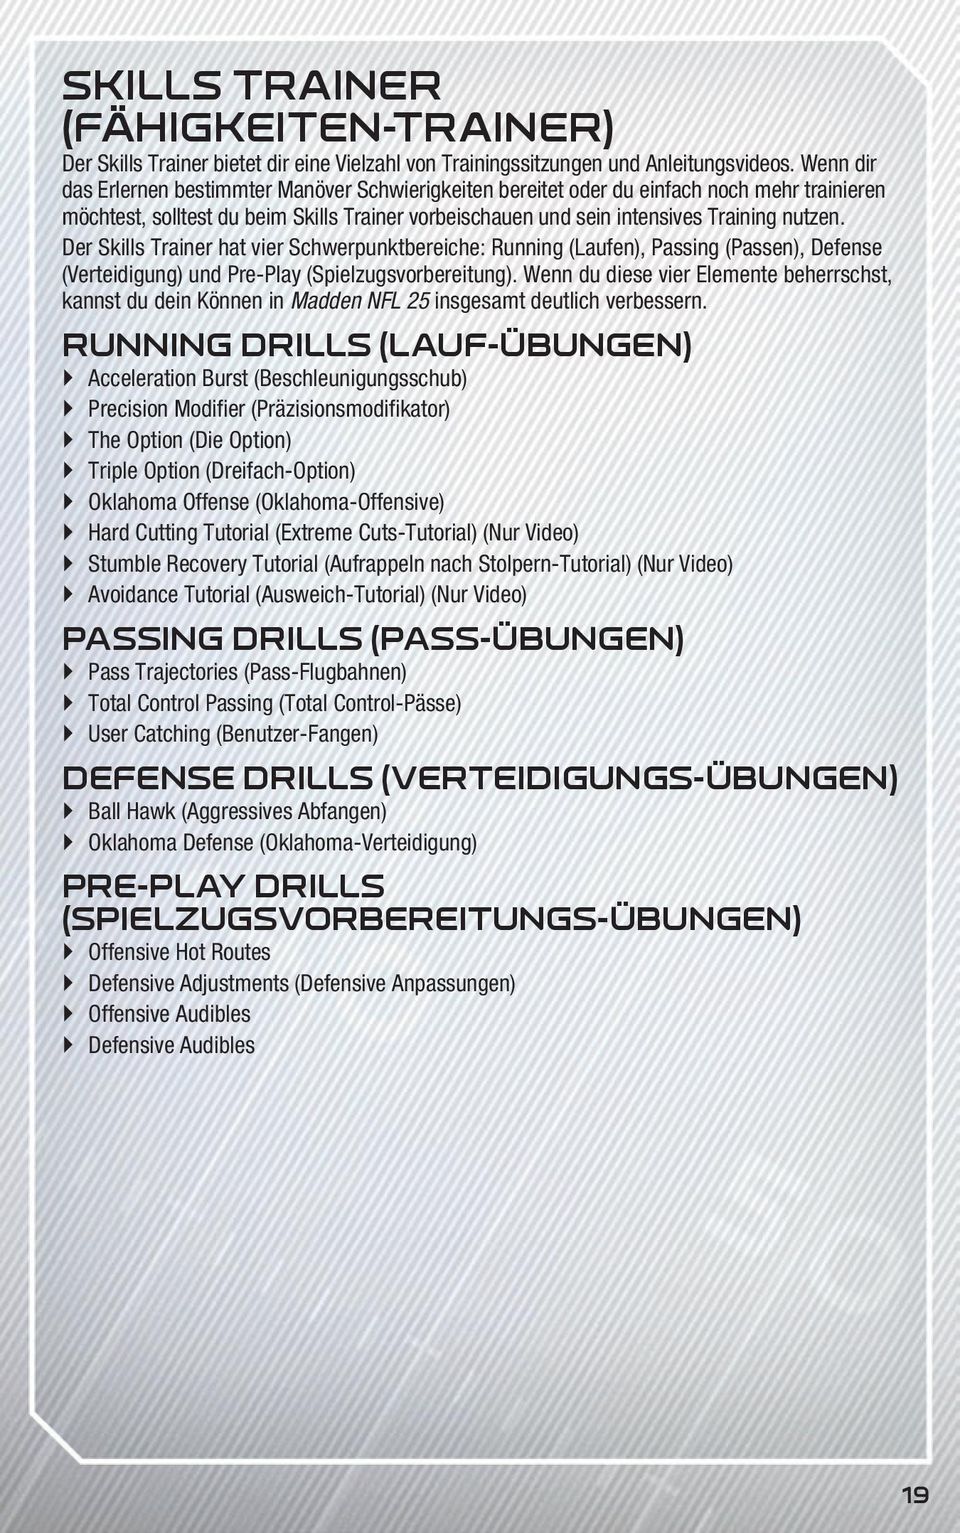 Der Skills Trainer hat vier Schwerpunktbereiche: Running (Laufen), Passing (Passen), Defense (Verteidigung) und Pre-Play (Spielzugsvorbereitung).